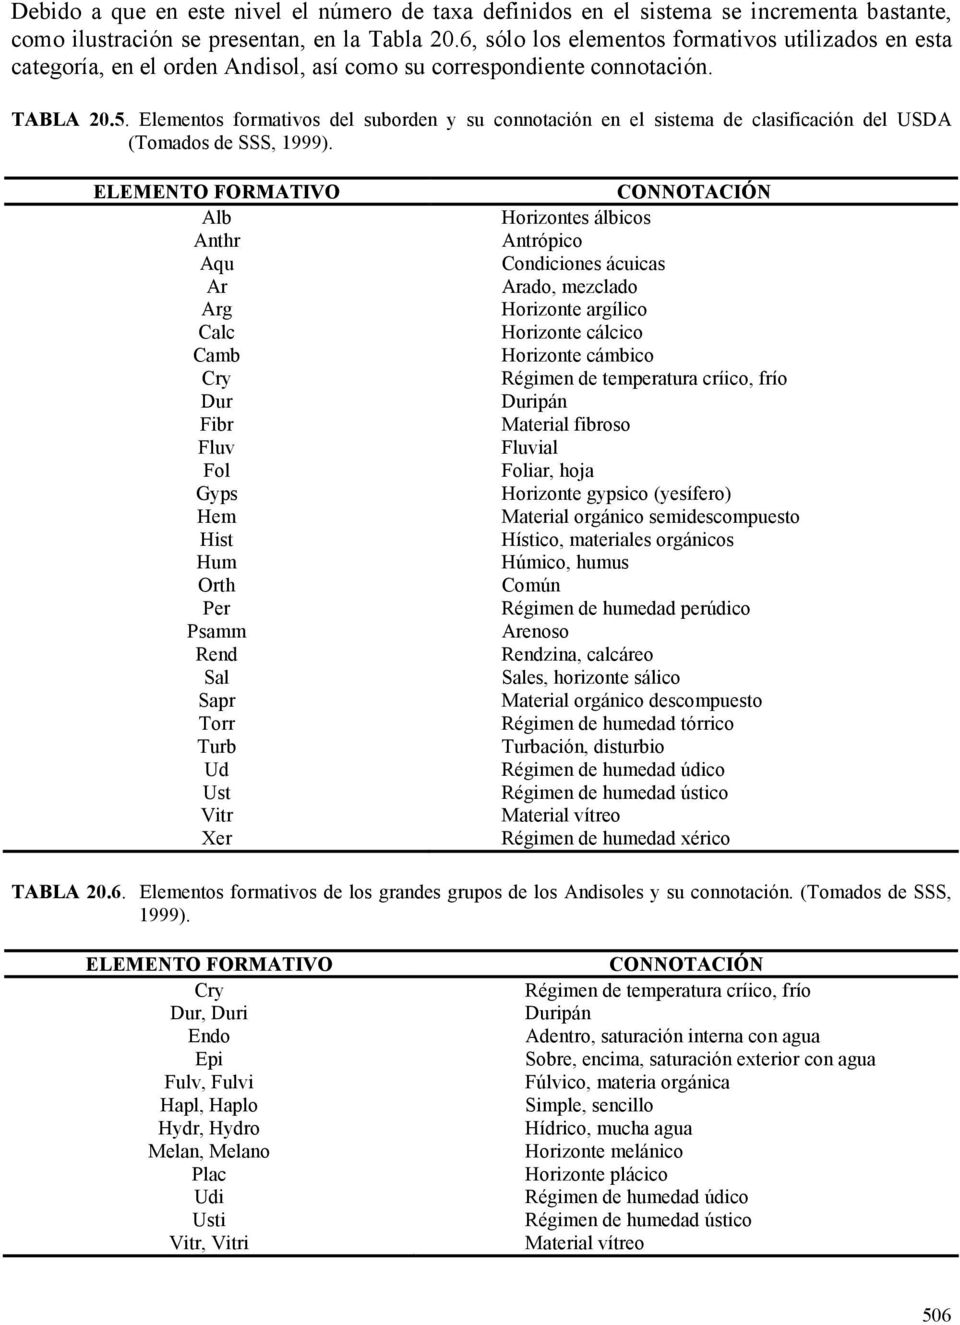 Elementos formativos del suborden y su connotación en el sistema de clasificación del USDA (Tomados de SSS, 1999).